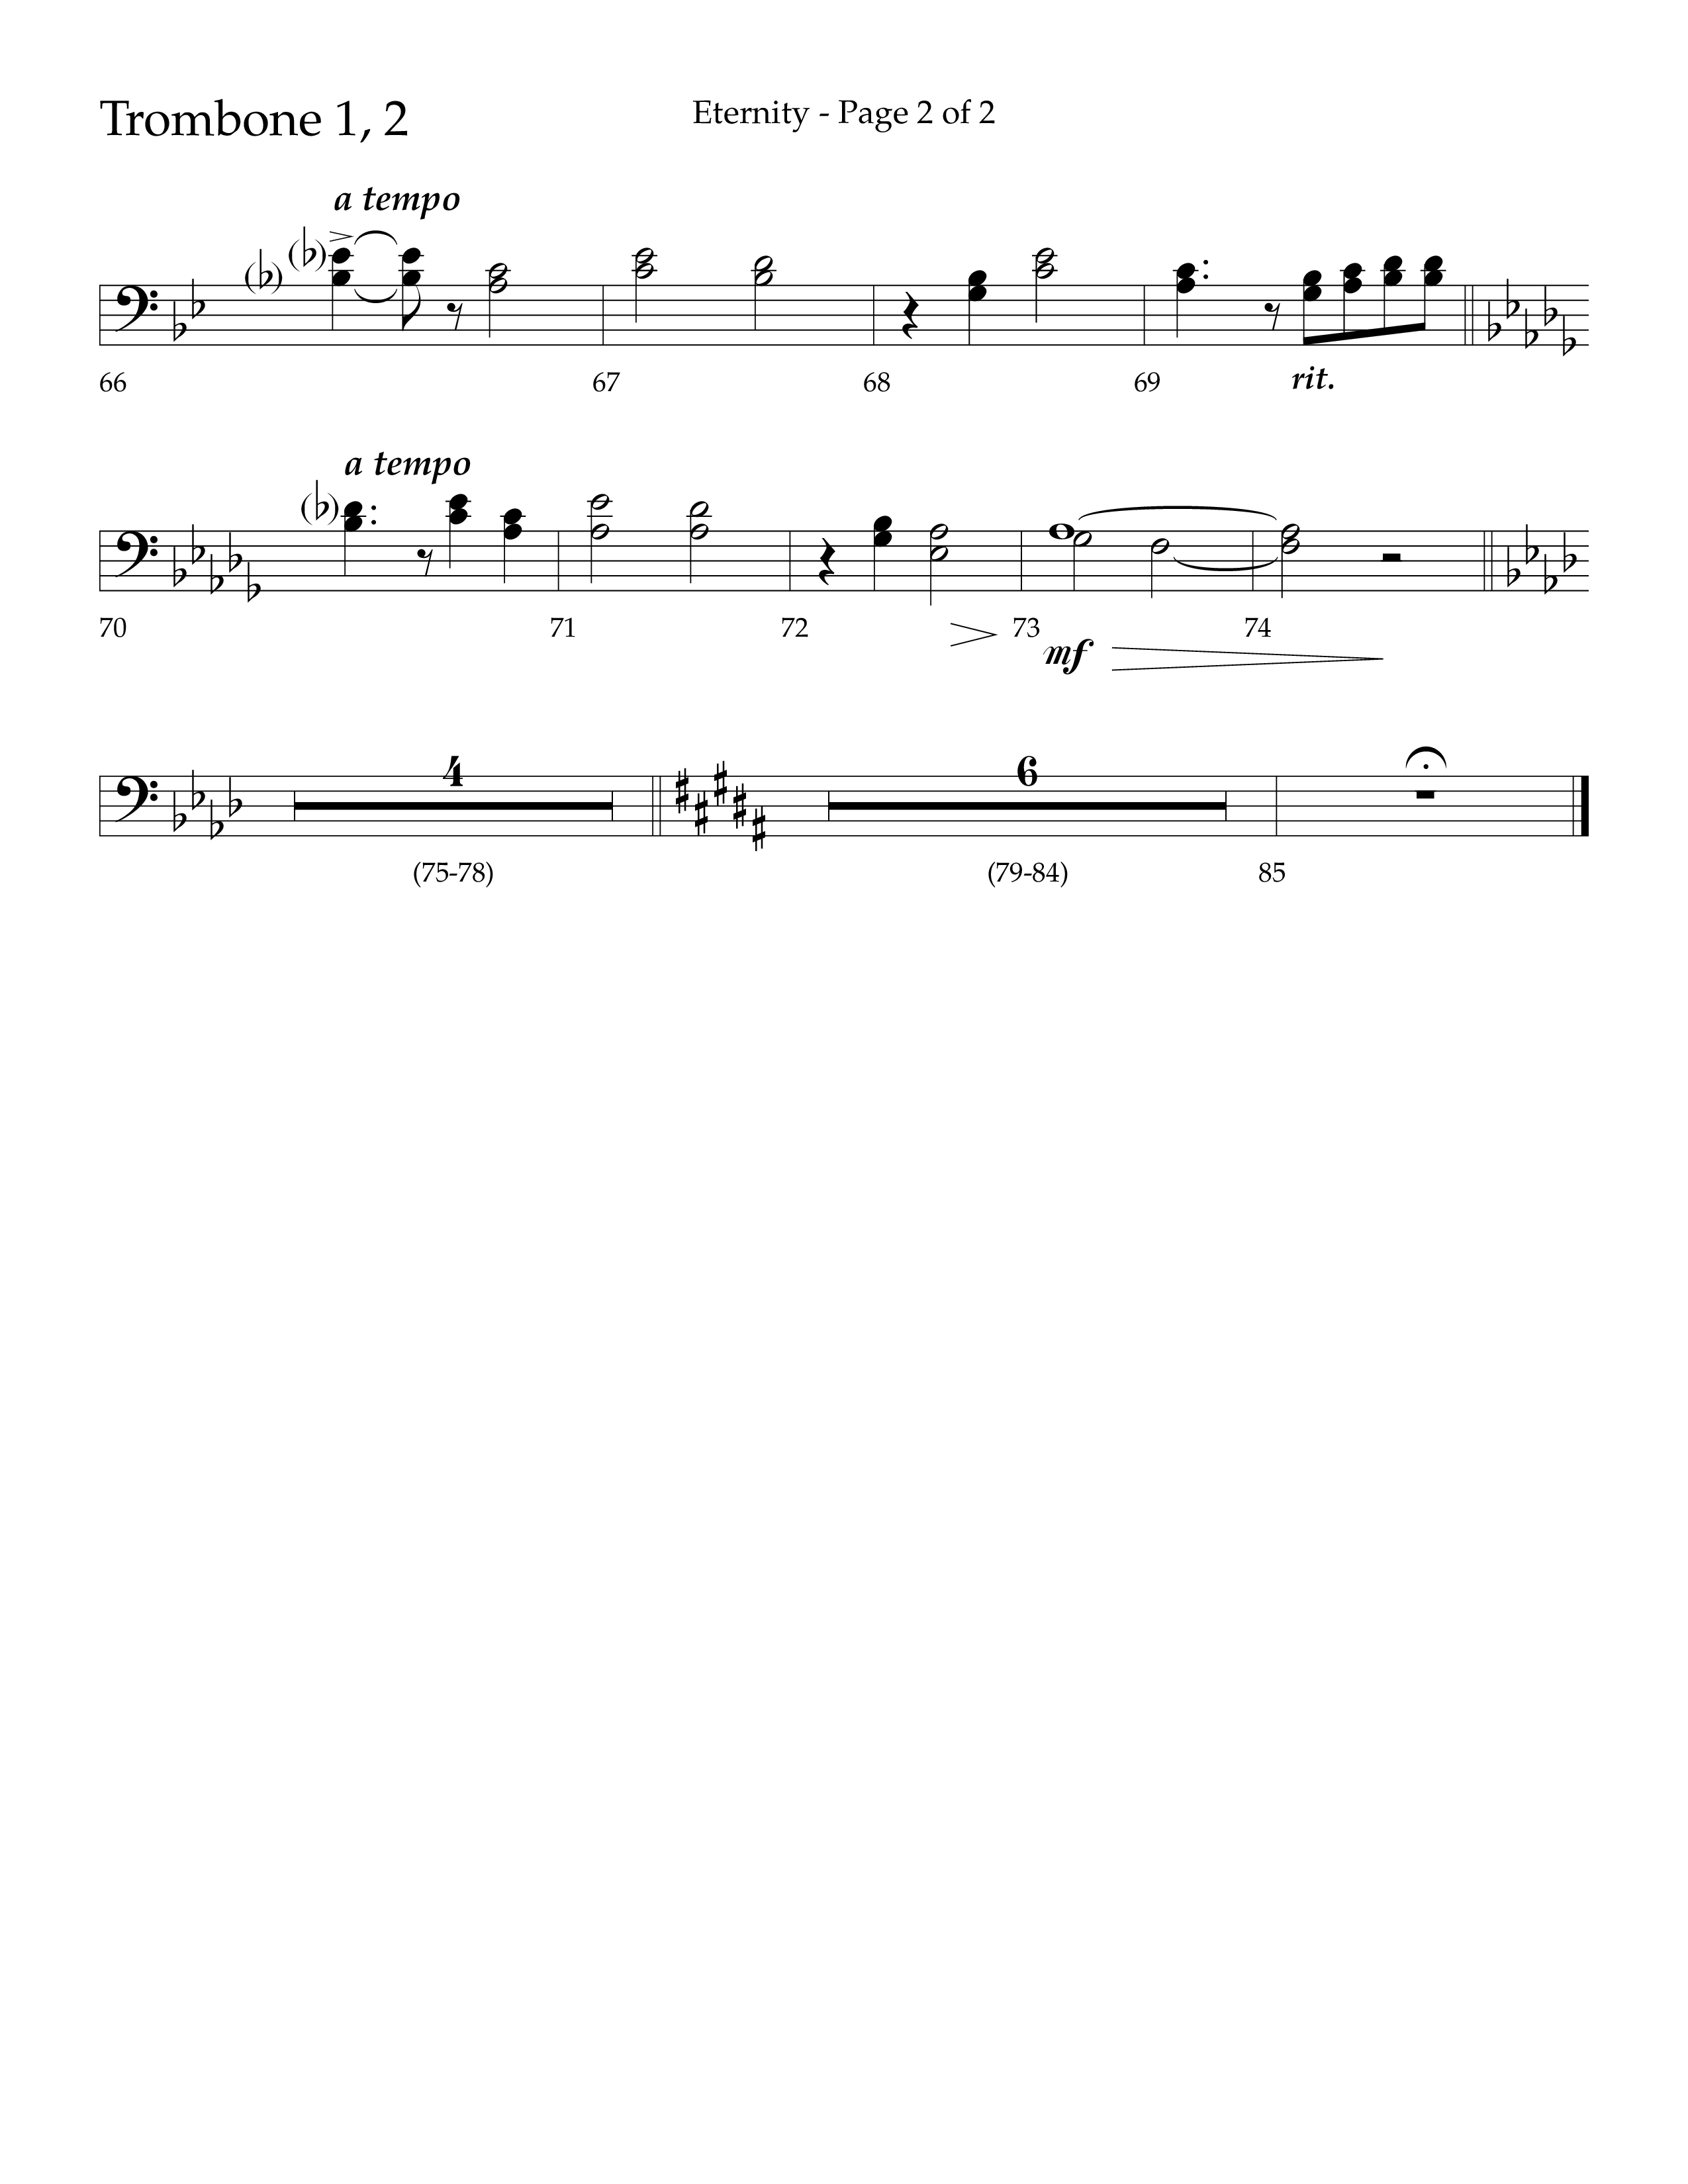 Eternity (Choral Anthem SATB) Trombone 1/2 (Lifeway Choral / Arr. Bradley Knight)